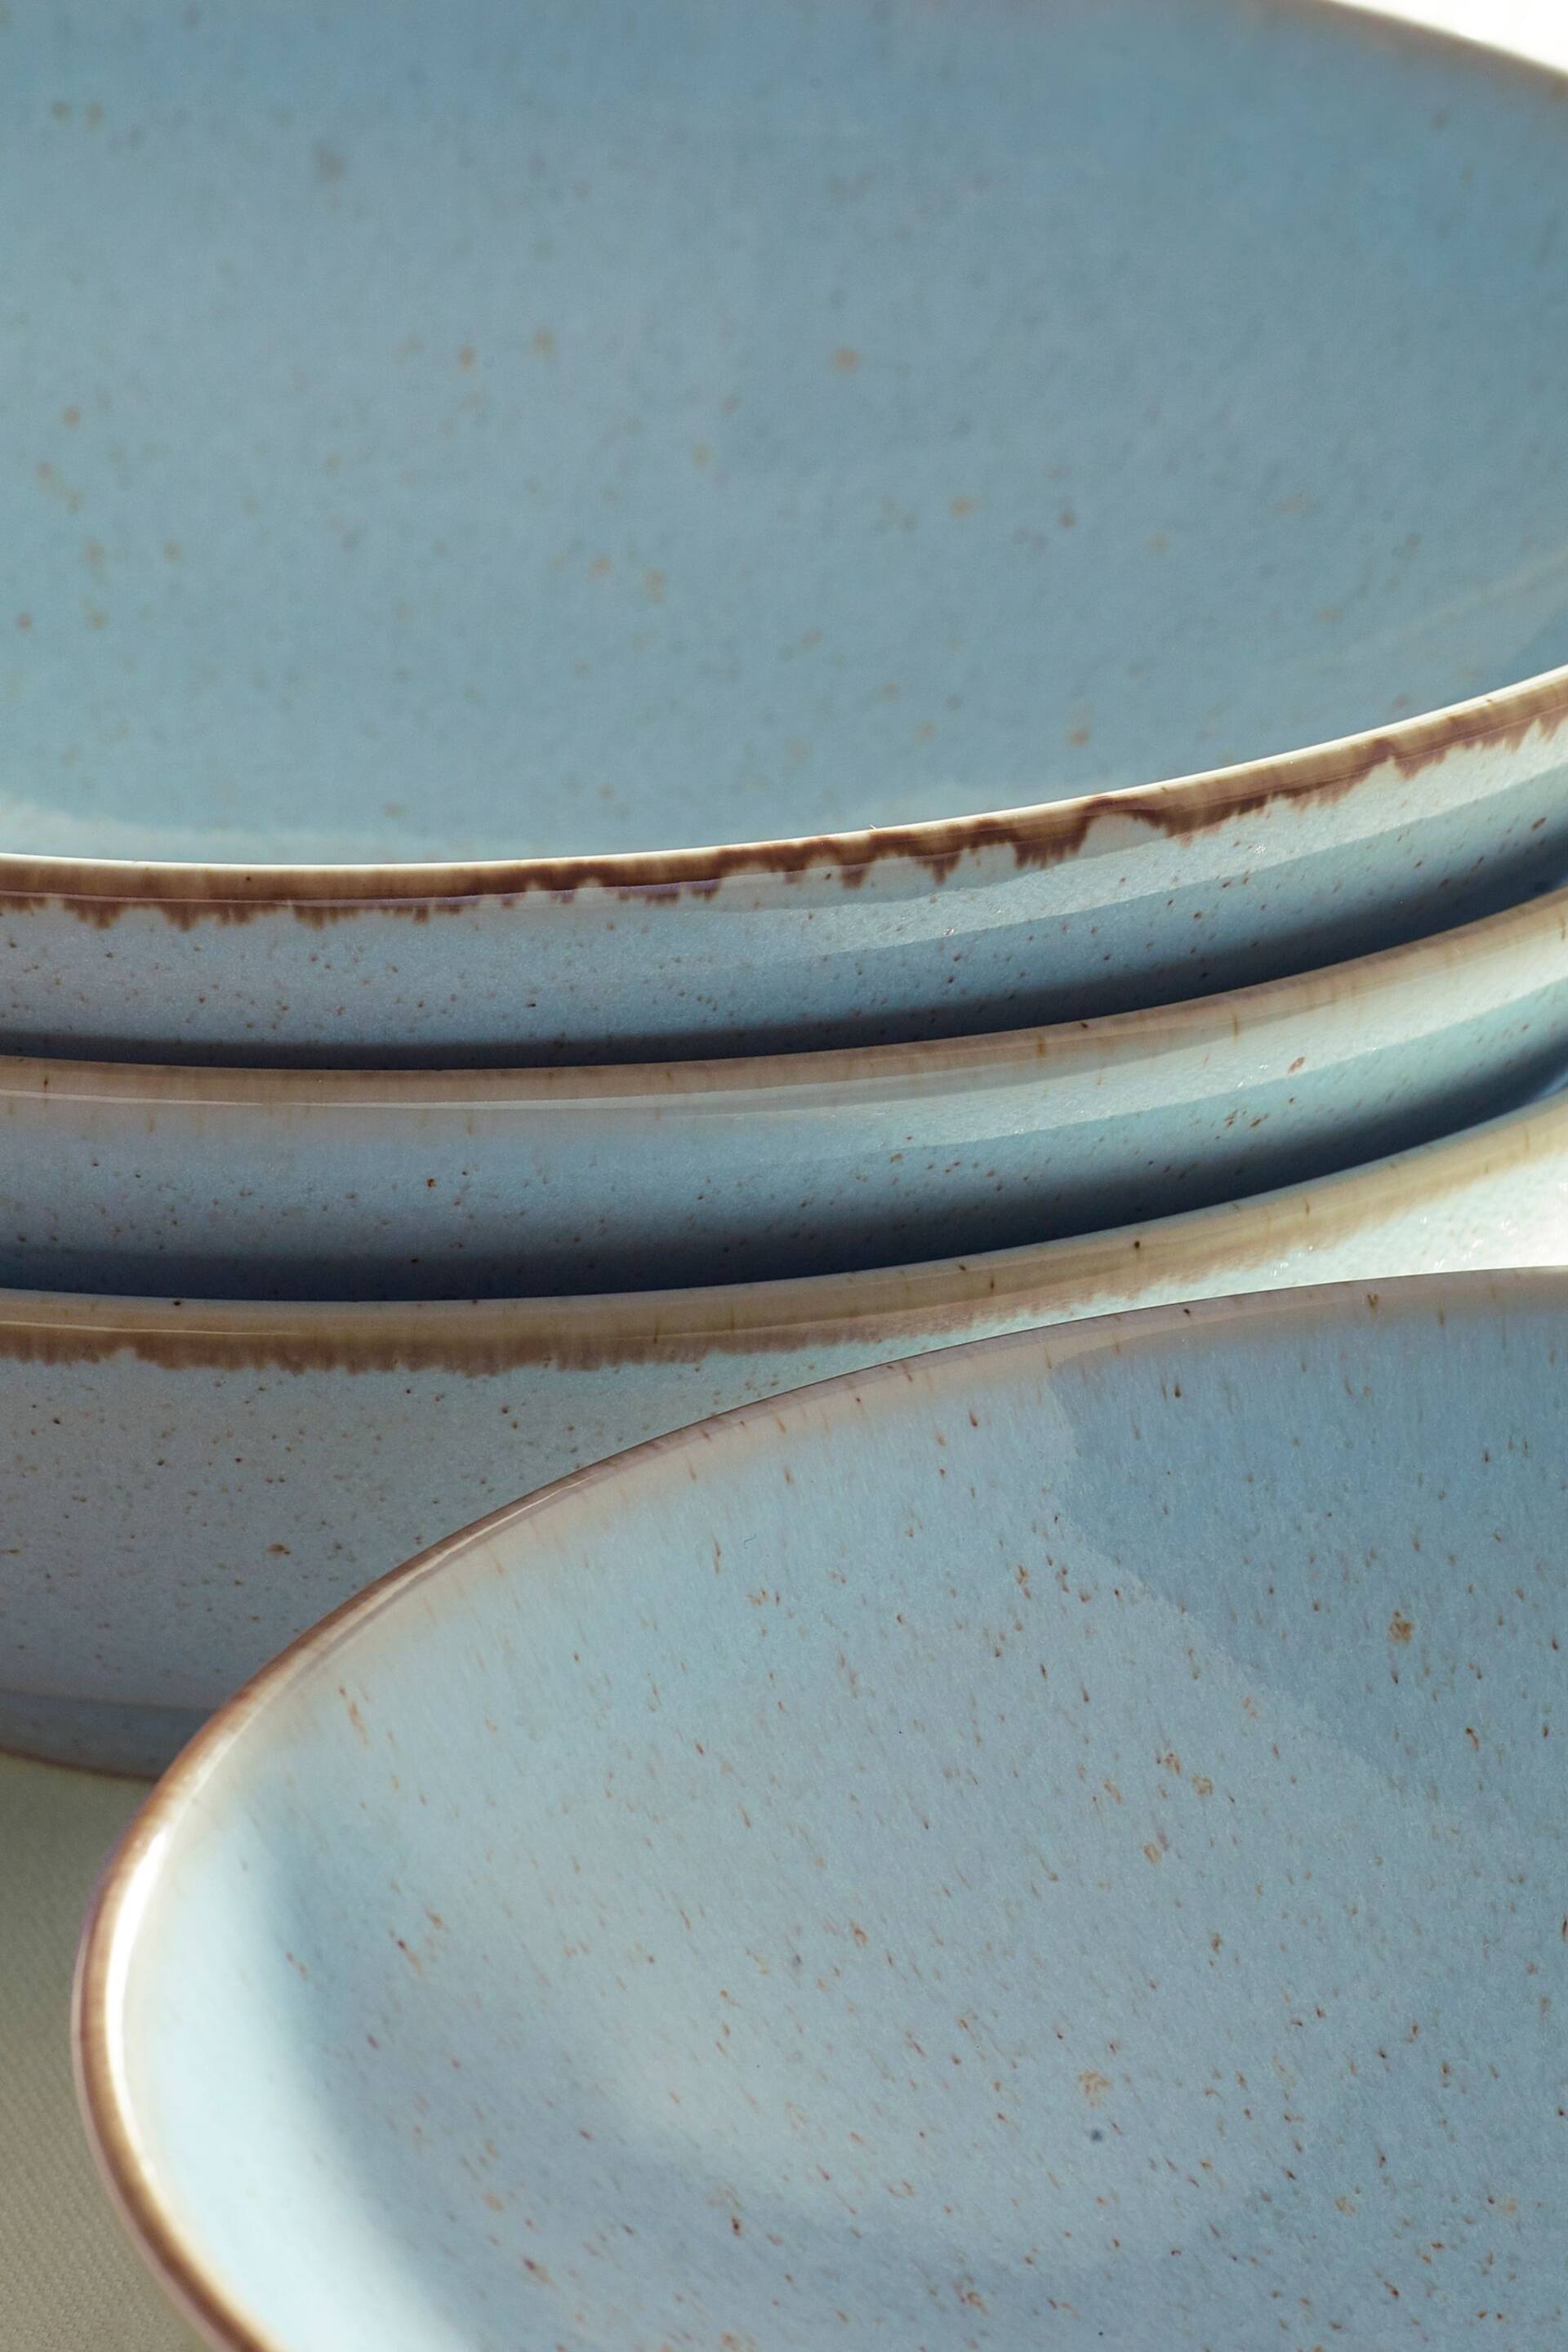 Set of 4 Teal Blue Large Pasta Bowls - Image 4 of 5